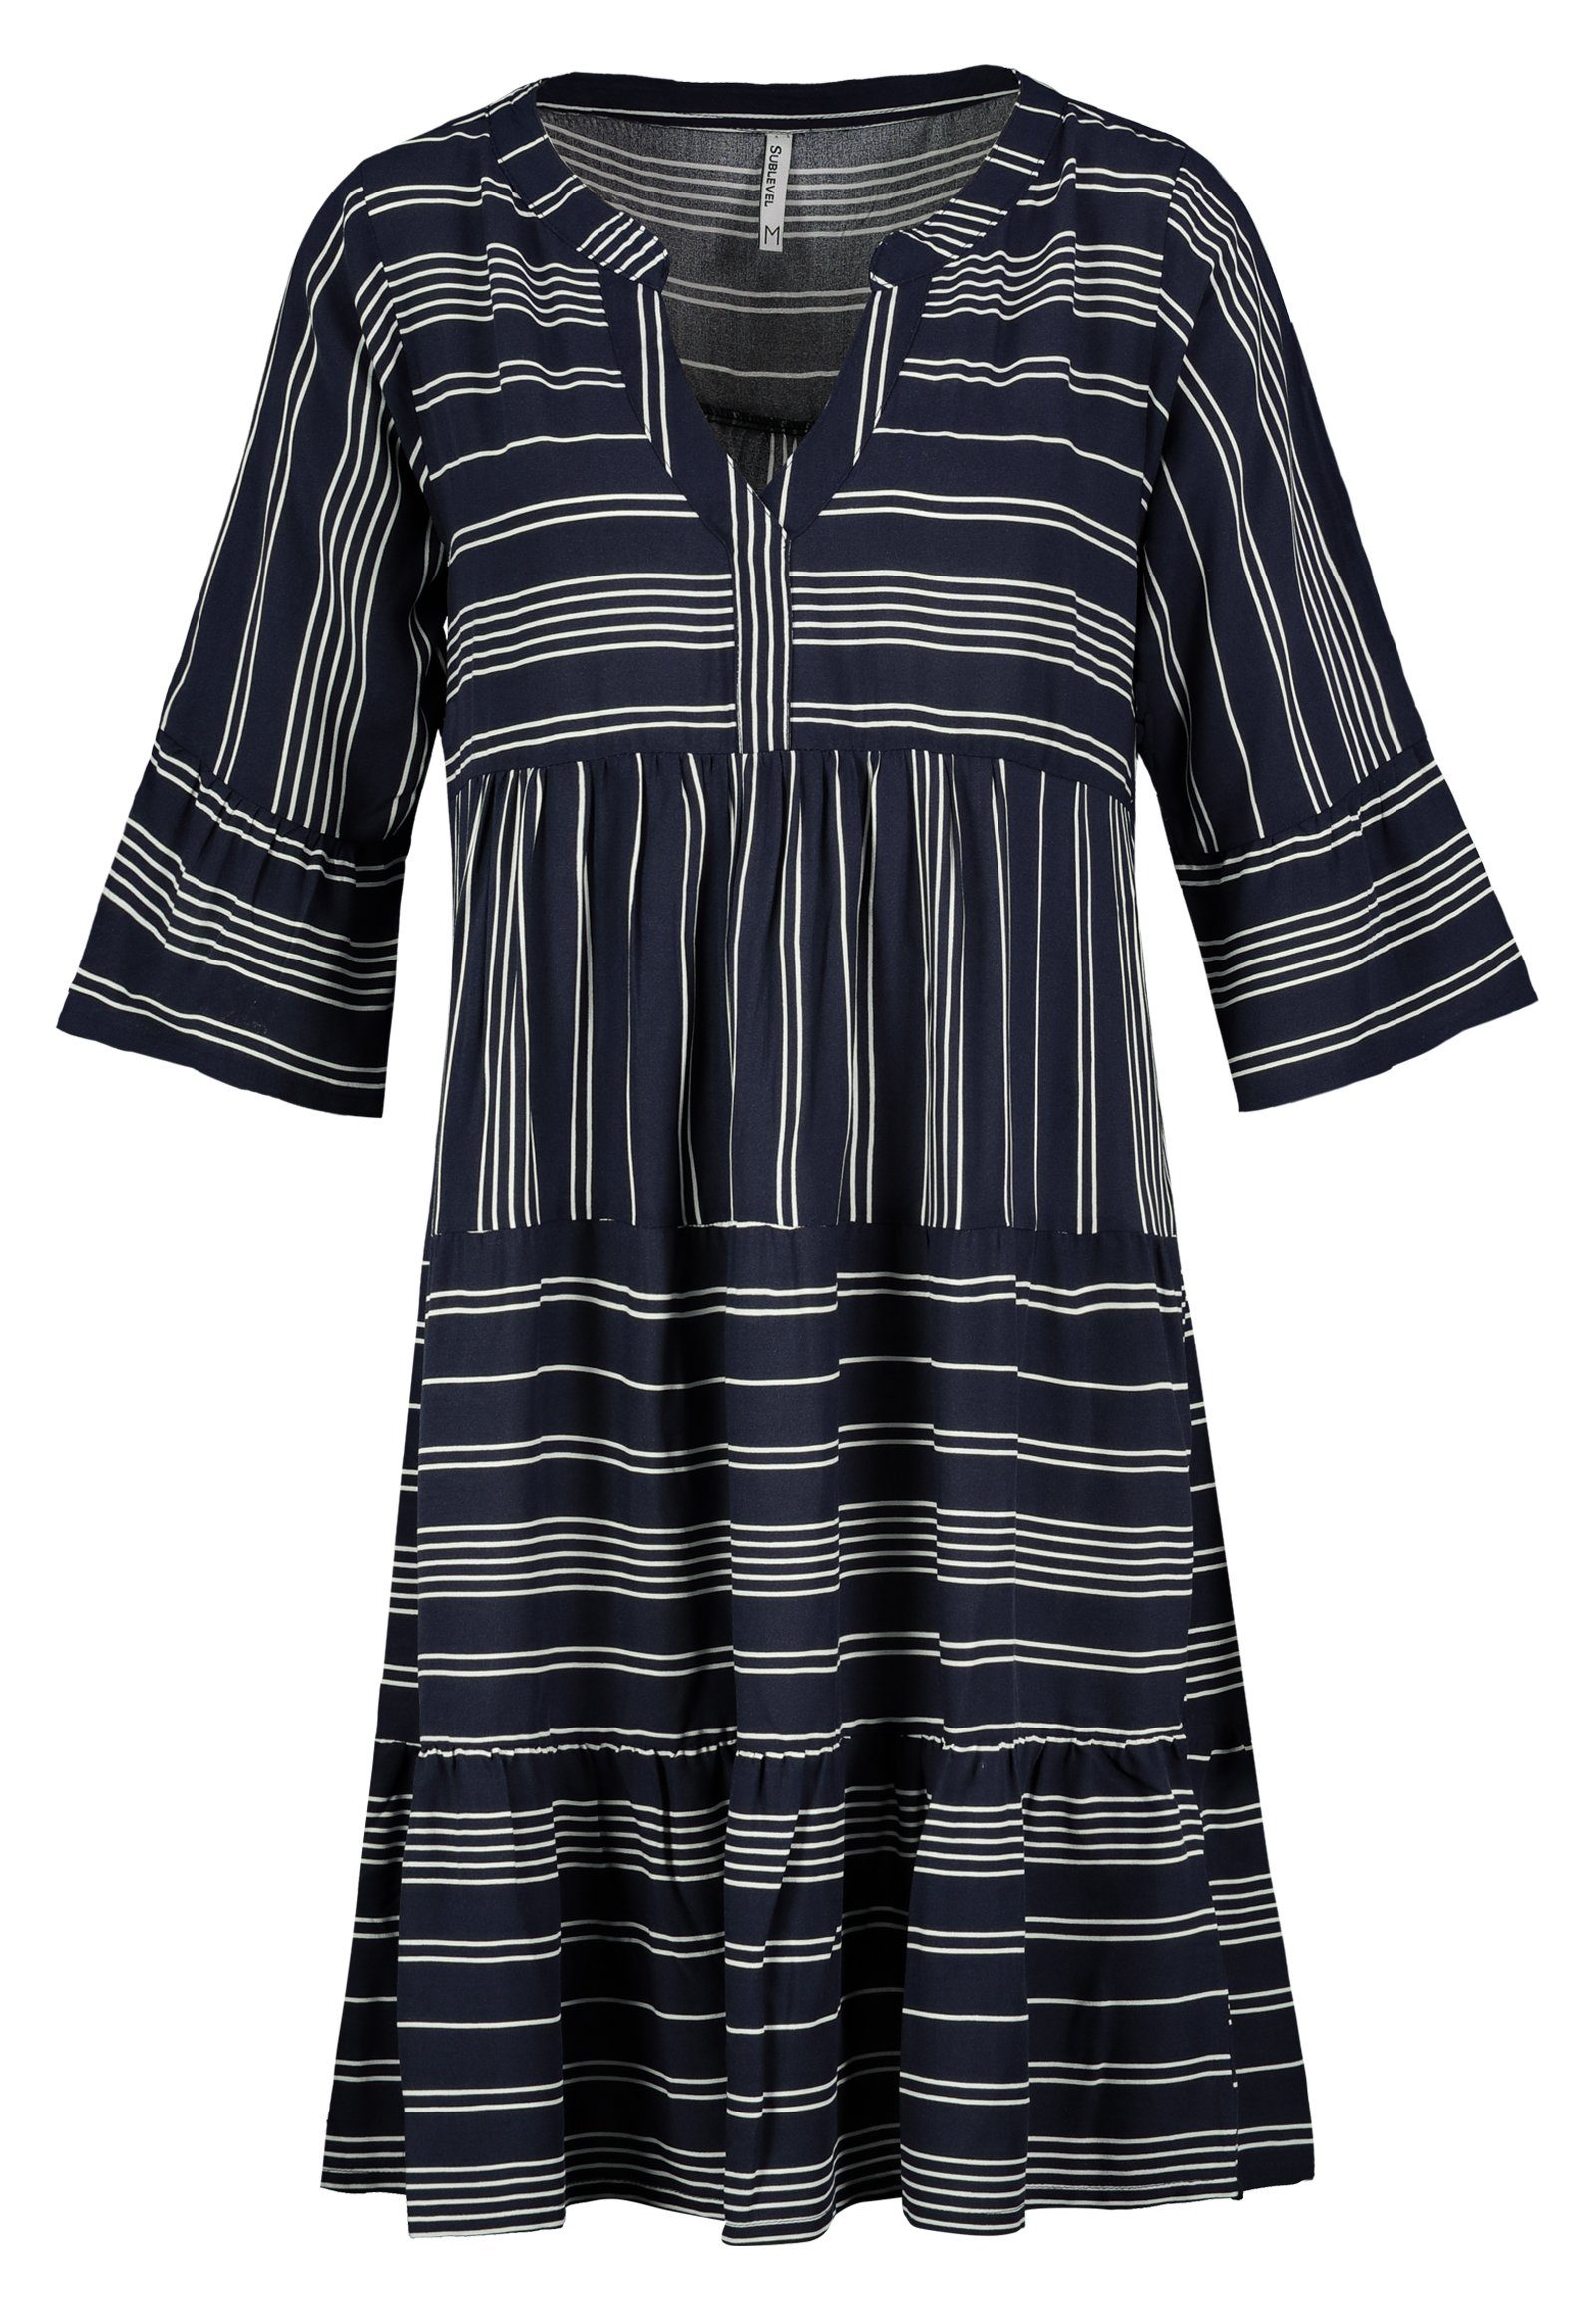 SUBLEVEL Strandkleid Sublevel Damen Kleid Strandkleid Sommerkleid 100% Viskose MIT VOLANTS dark blue design01